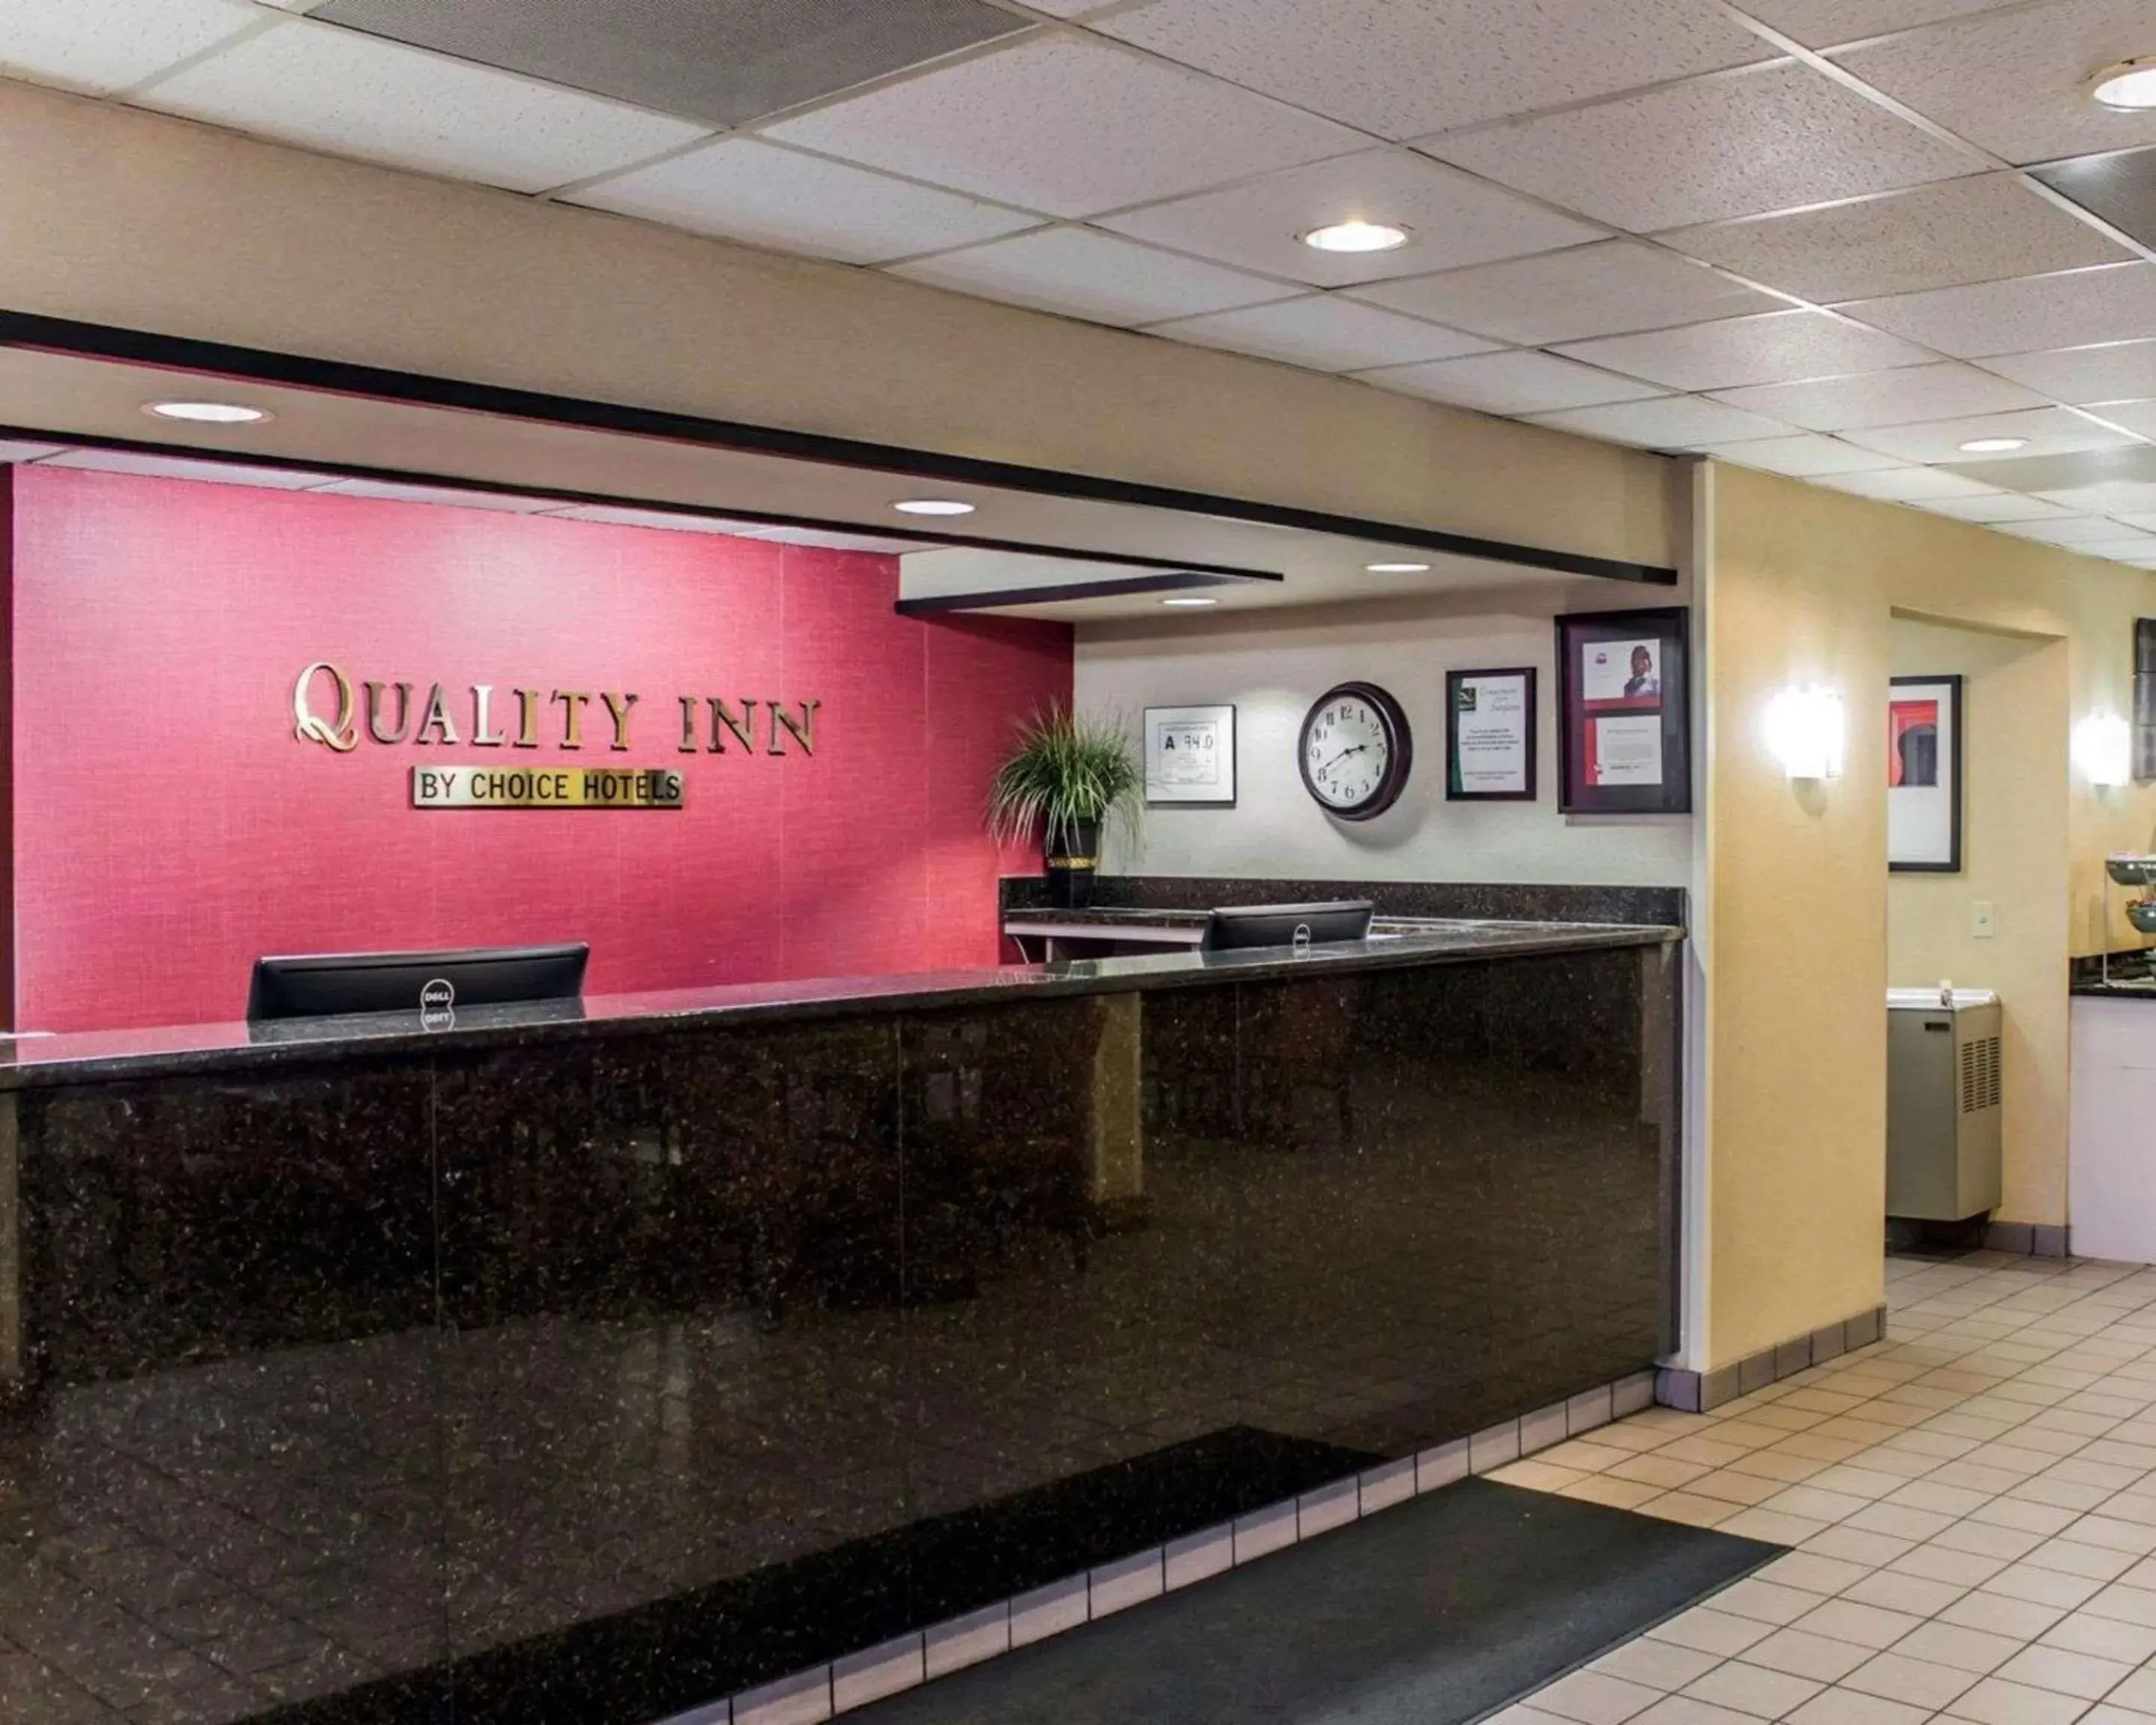 Lobby or reception, Lobby/Reception in Quality Inn Roanoke near Lake Gaston